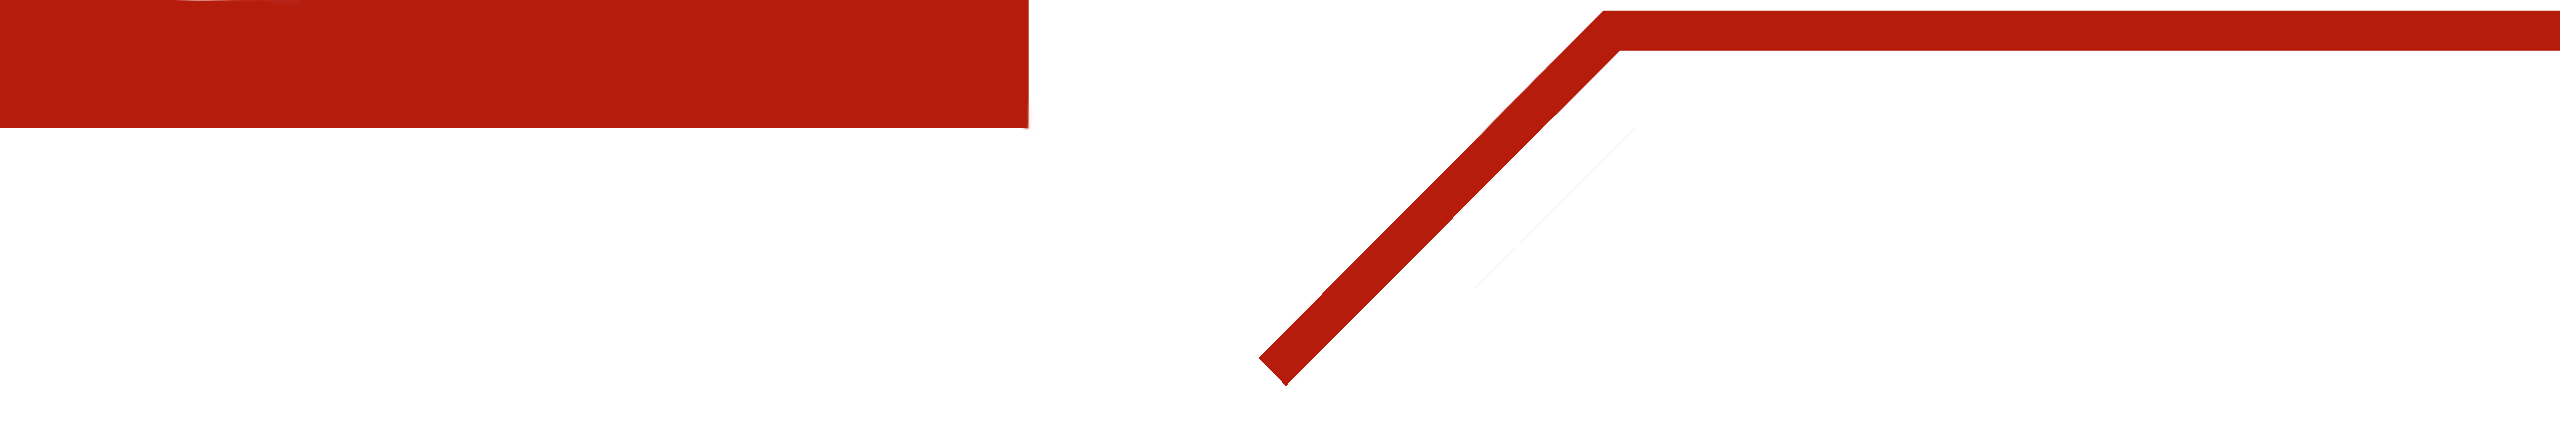 divider pijl wit met rode lijn